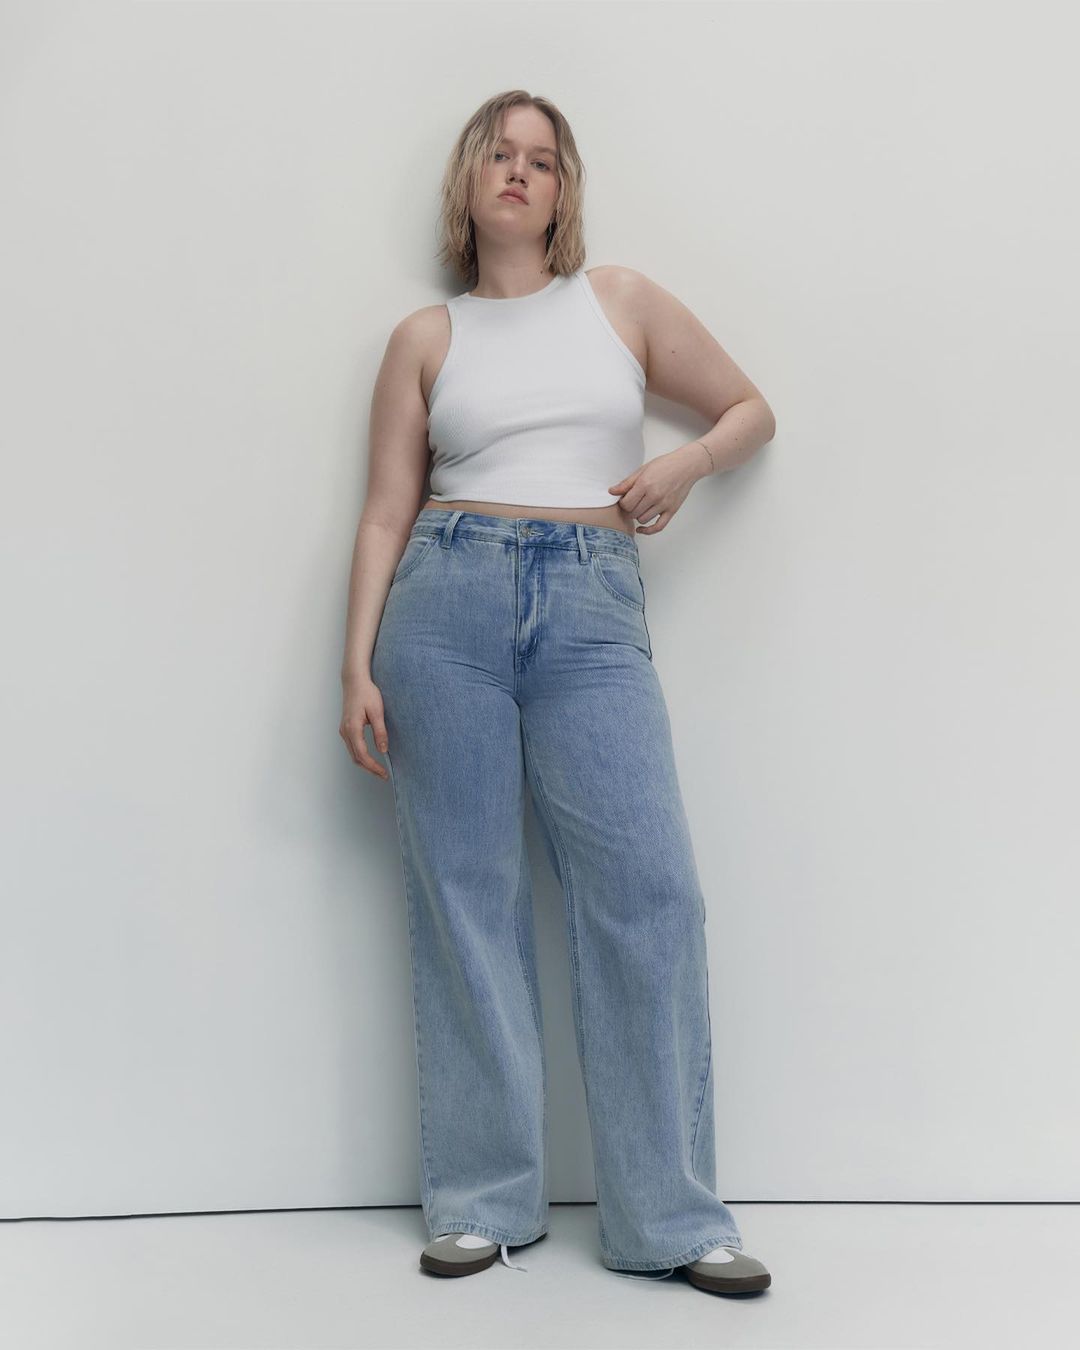 Девушка в больших джинсах